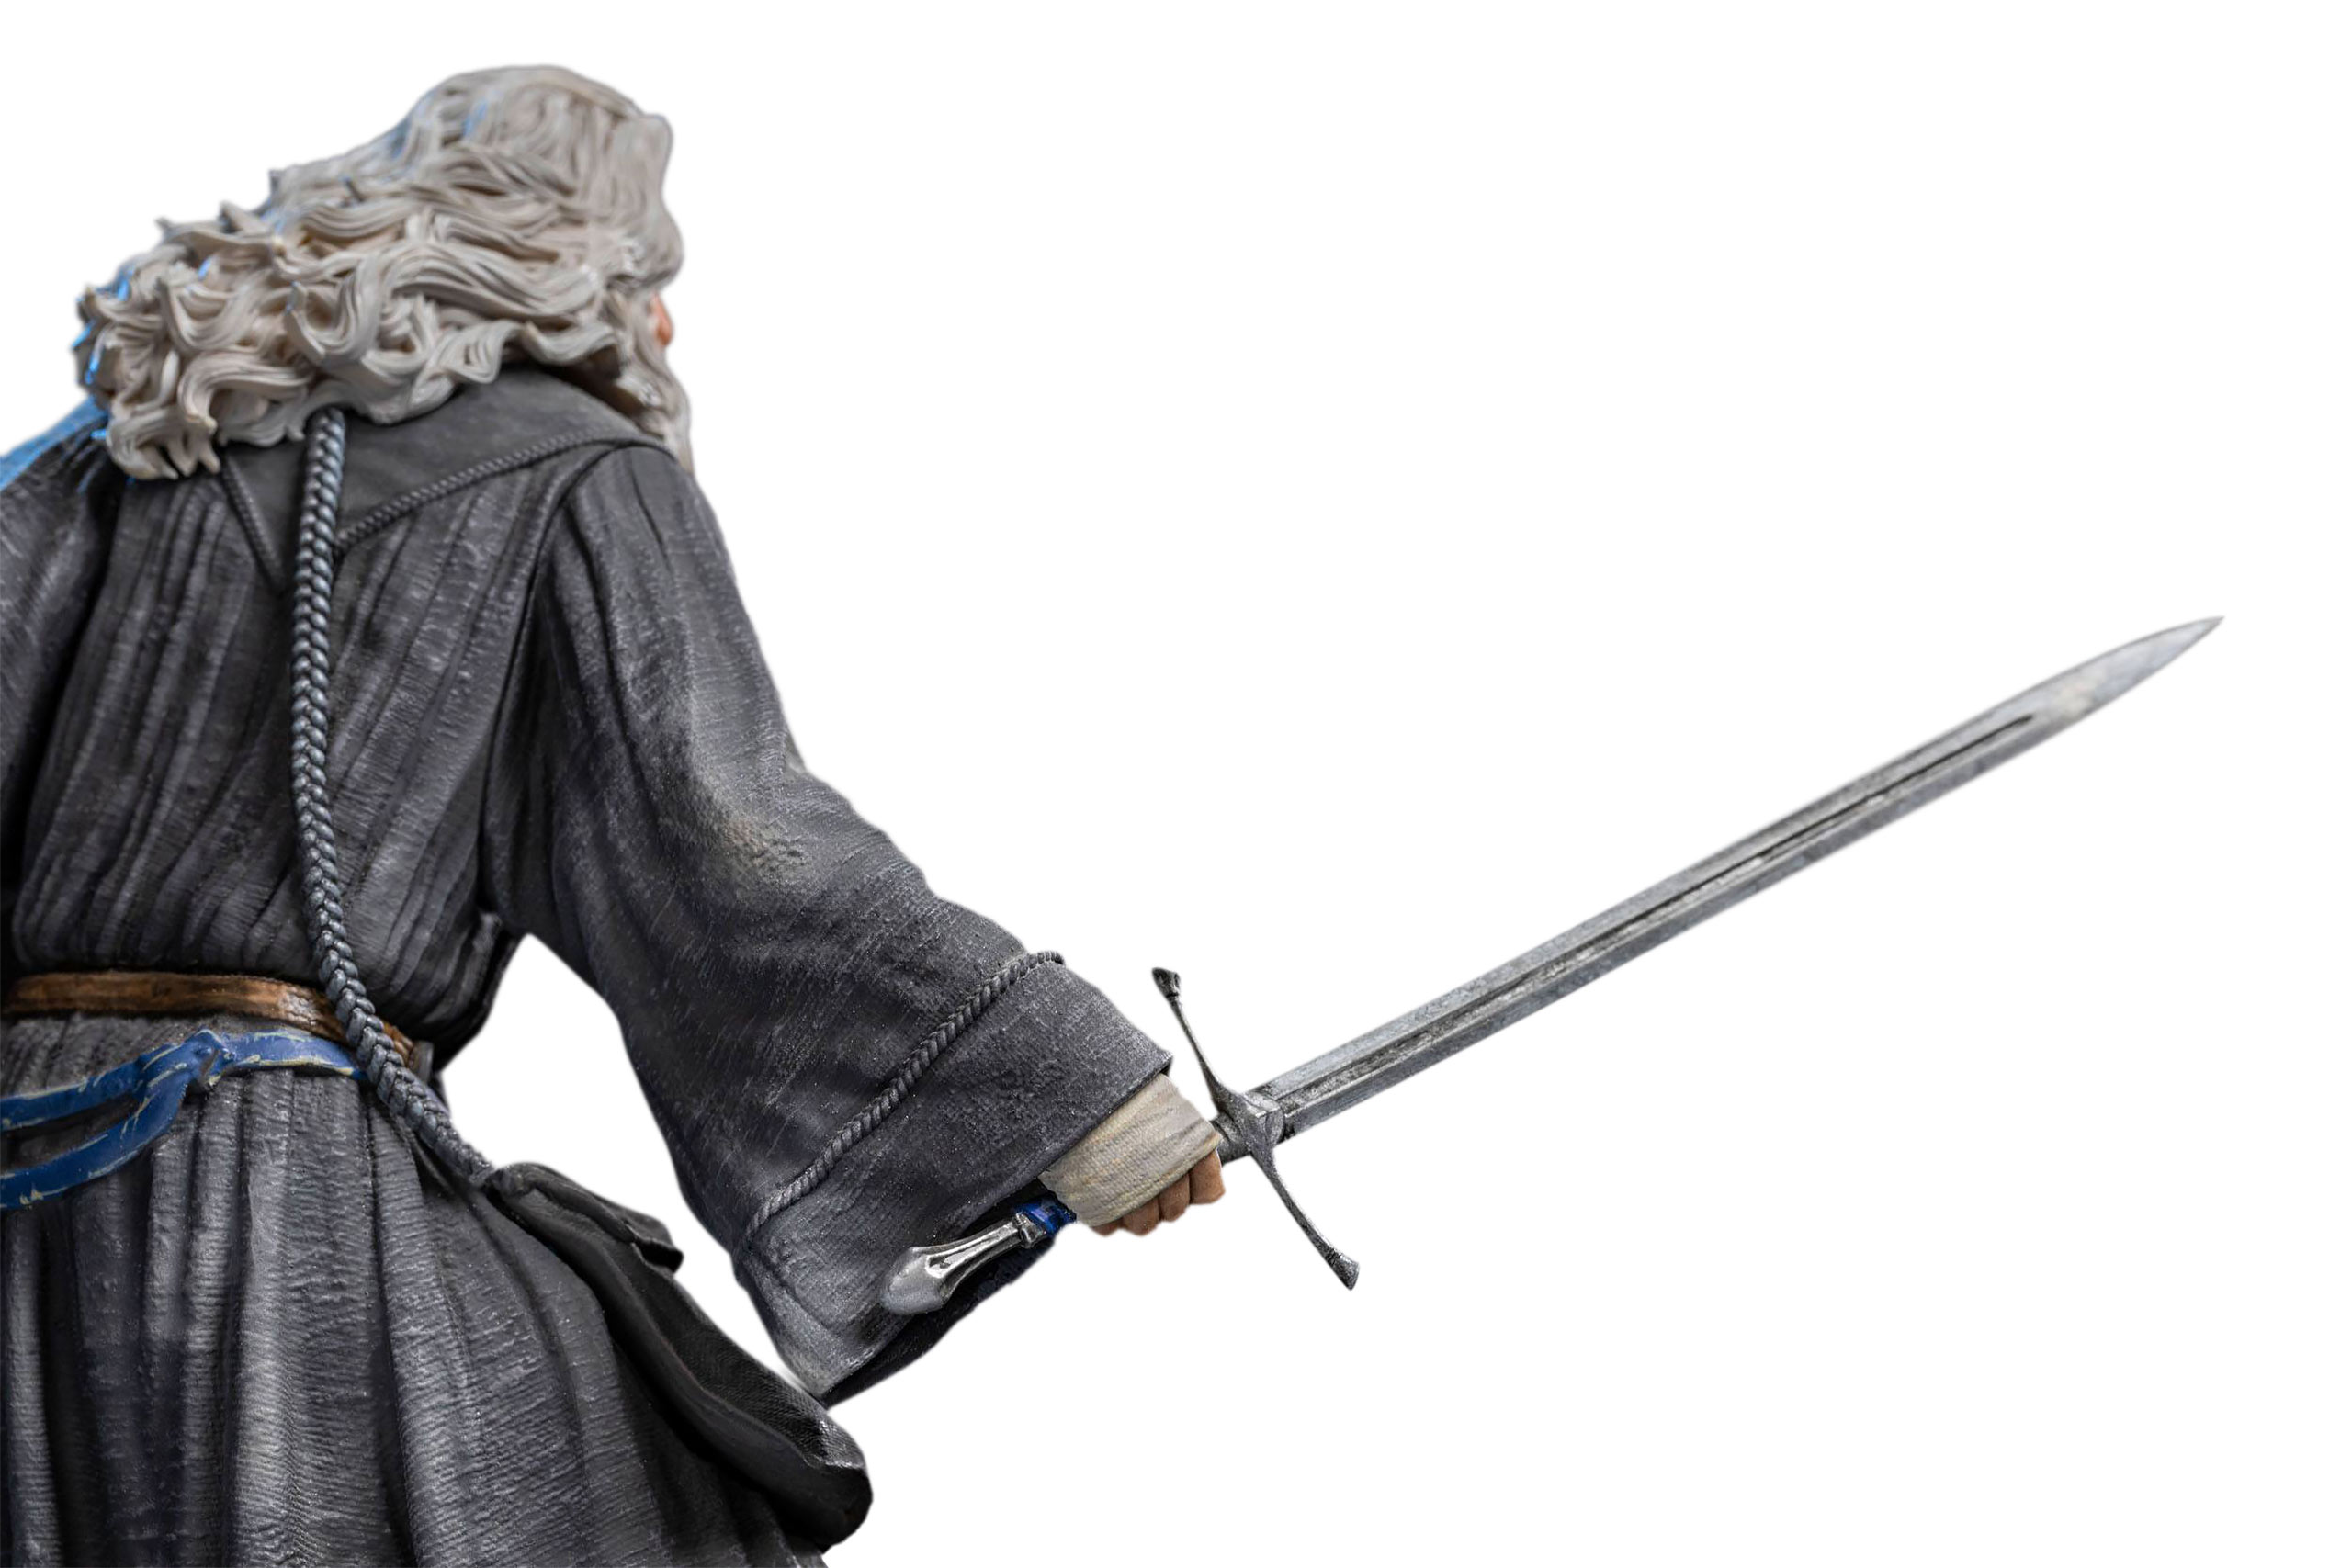 Seigneur des Anneaux - Gandalf BDS Art Scale Deluxe Statue 1:10